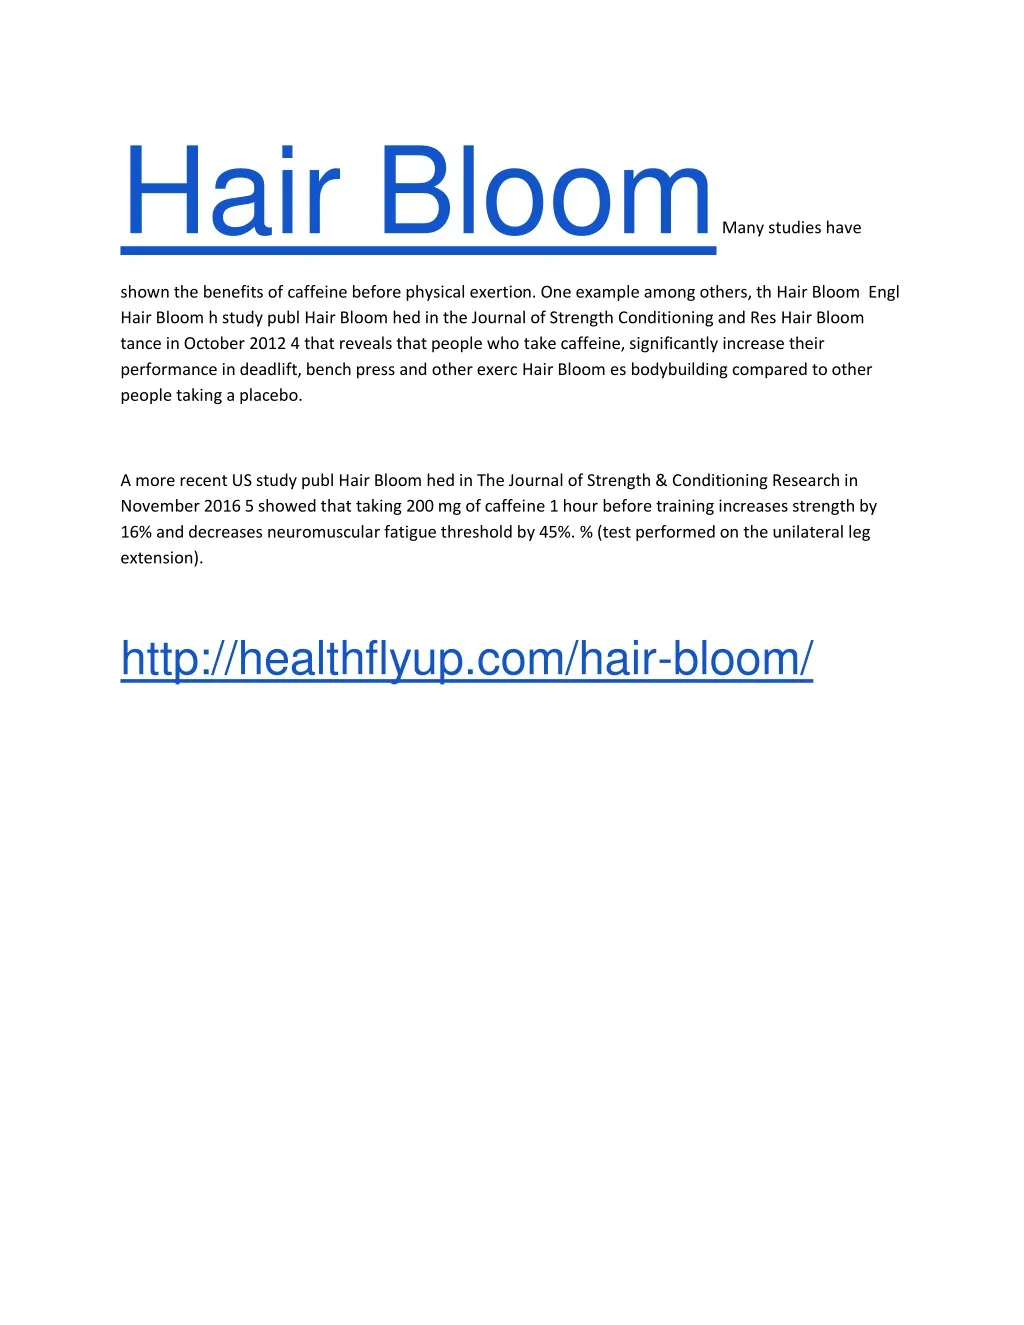 hair bloom many studies have